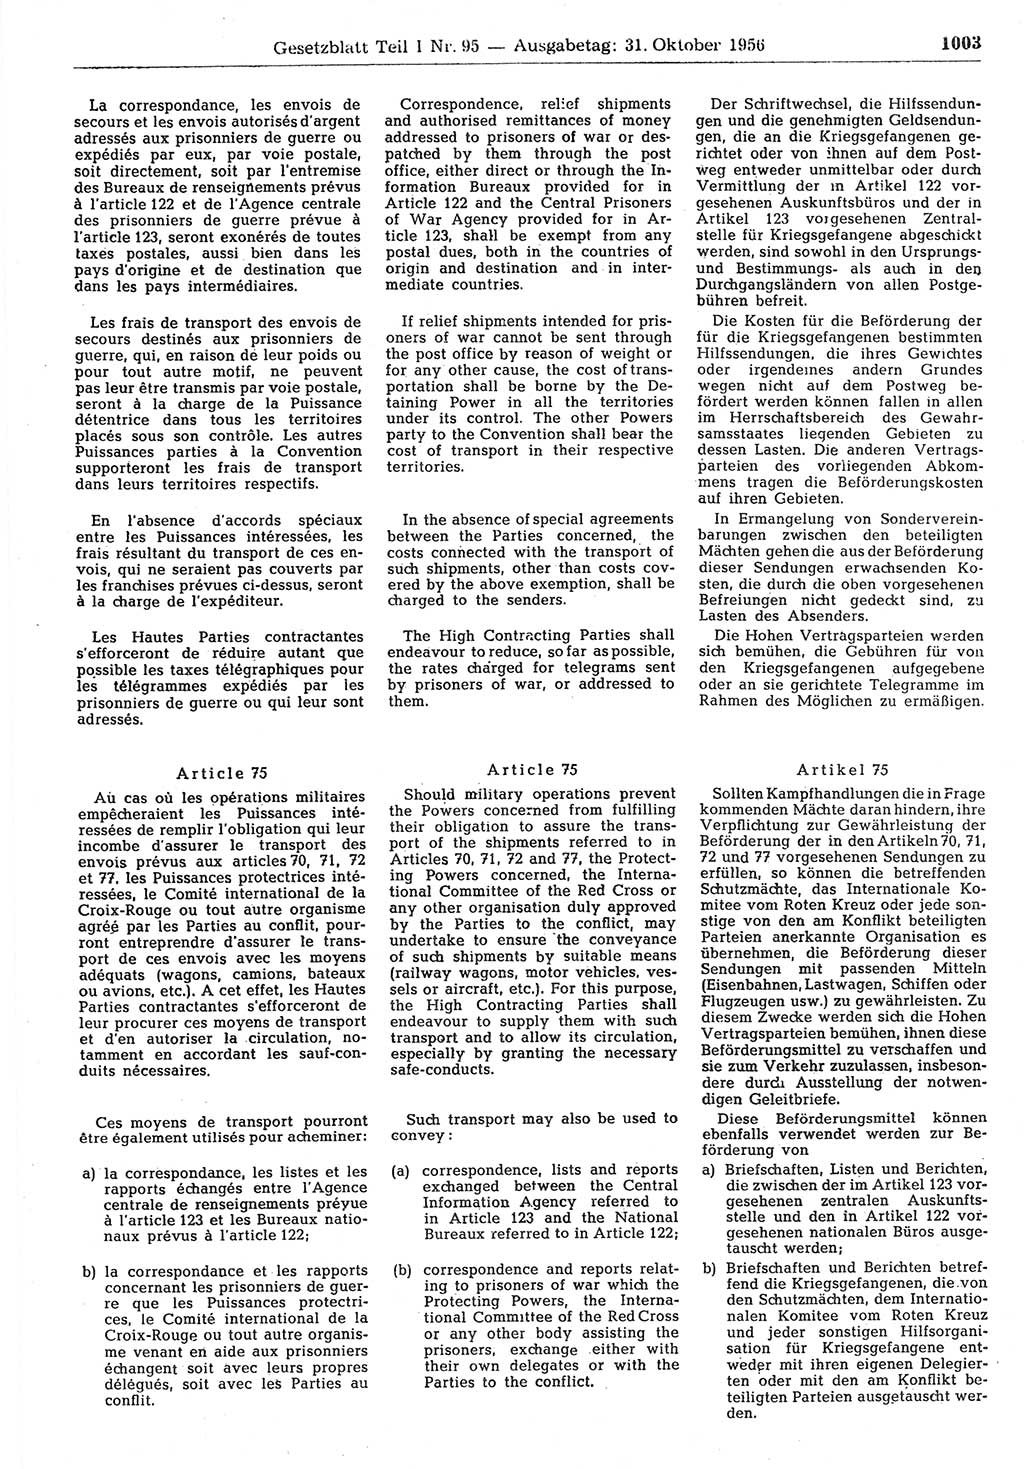 Gesetzblatt (GBl.) der Deutschen Demokratischen Republik (DDR) Teil Ⅰ 1956, Seite 1003 (GBl. DDR Ⅰ 1956, S. 1003)